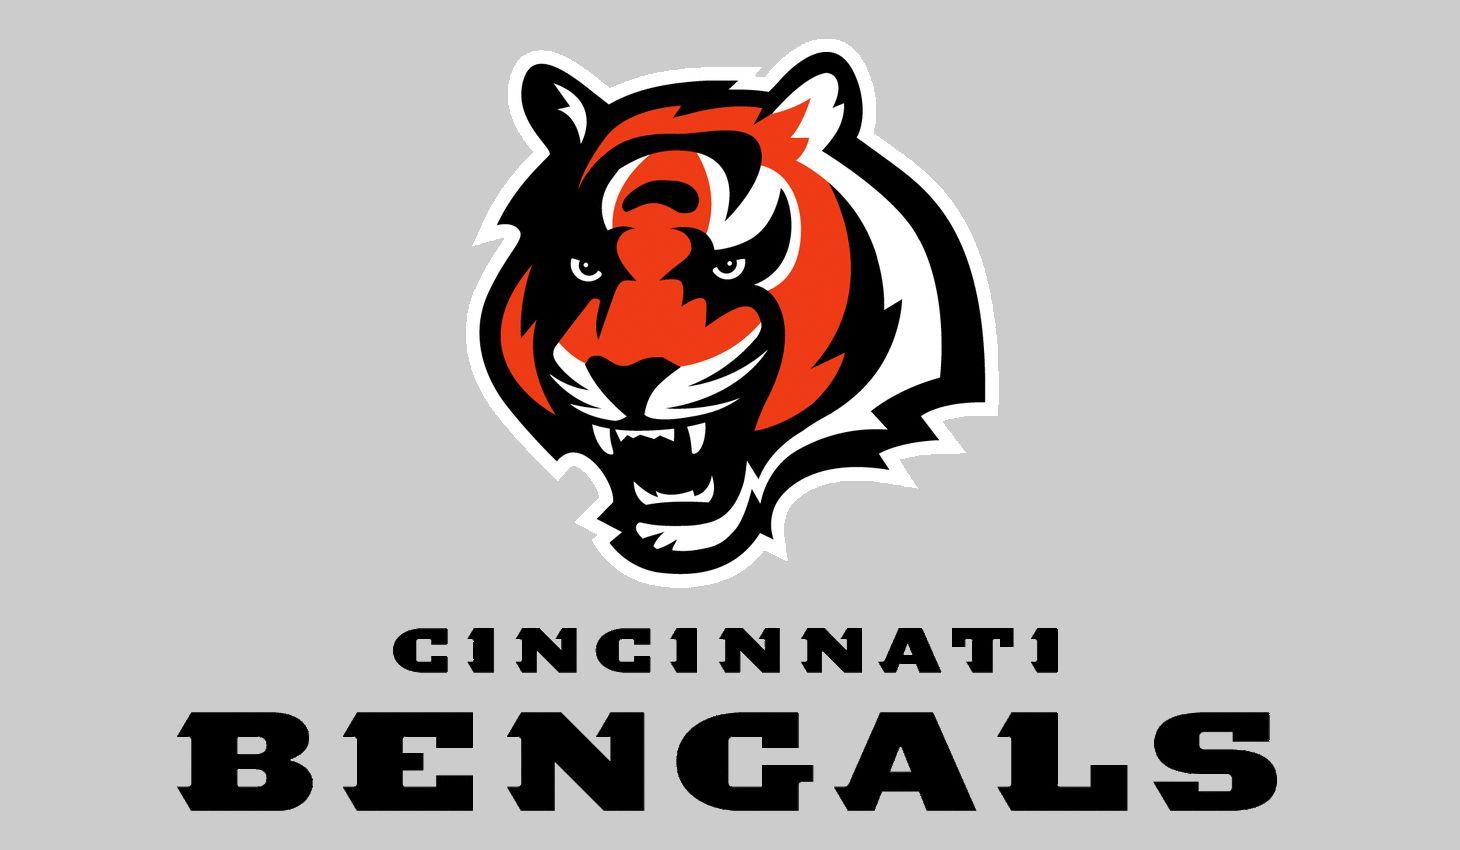 Bengals Logo - Cincinnati Bengals Logo, Bengals Symbol, Meaning, History and Evolution